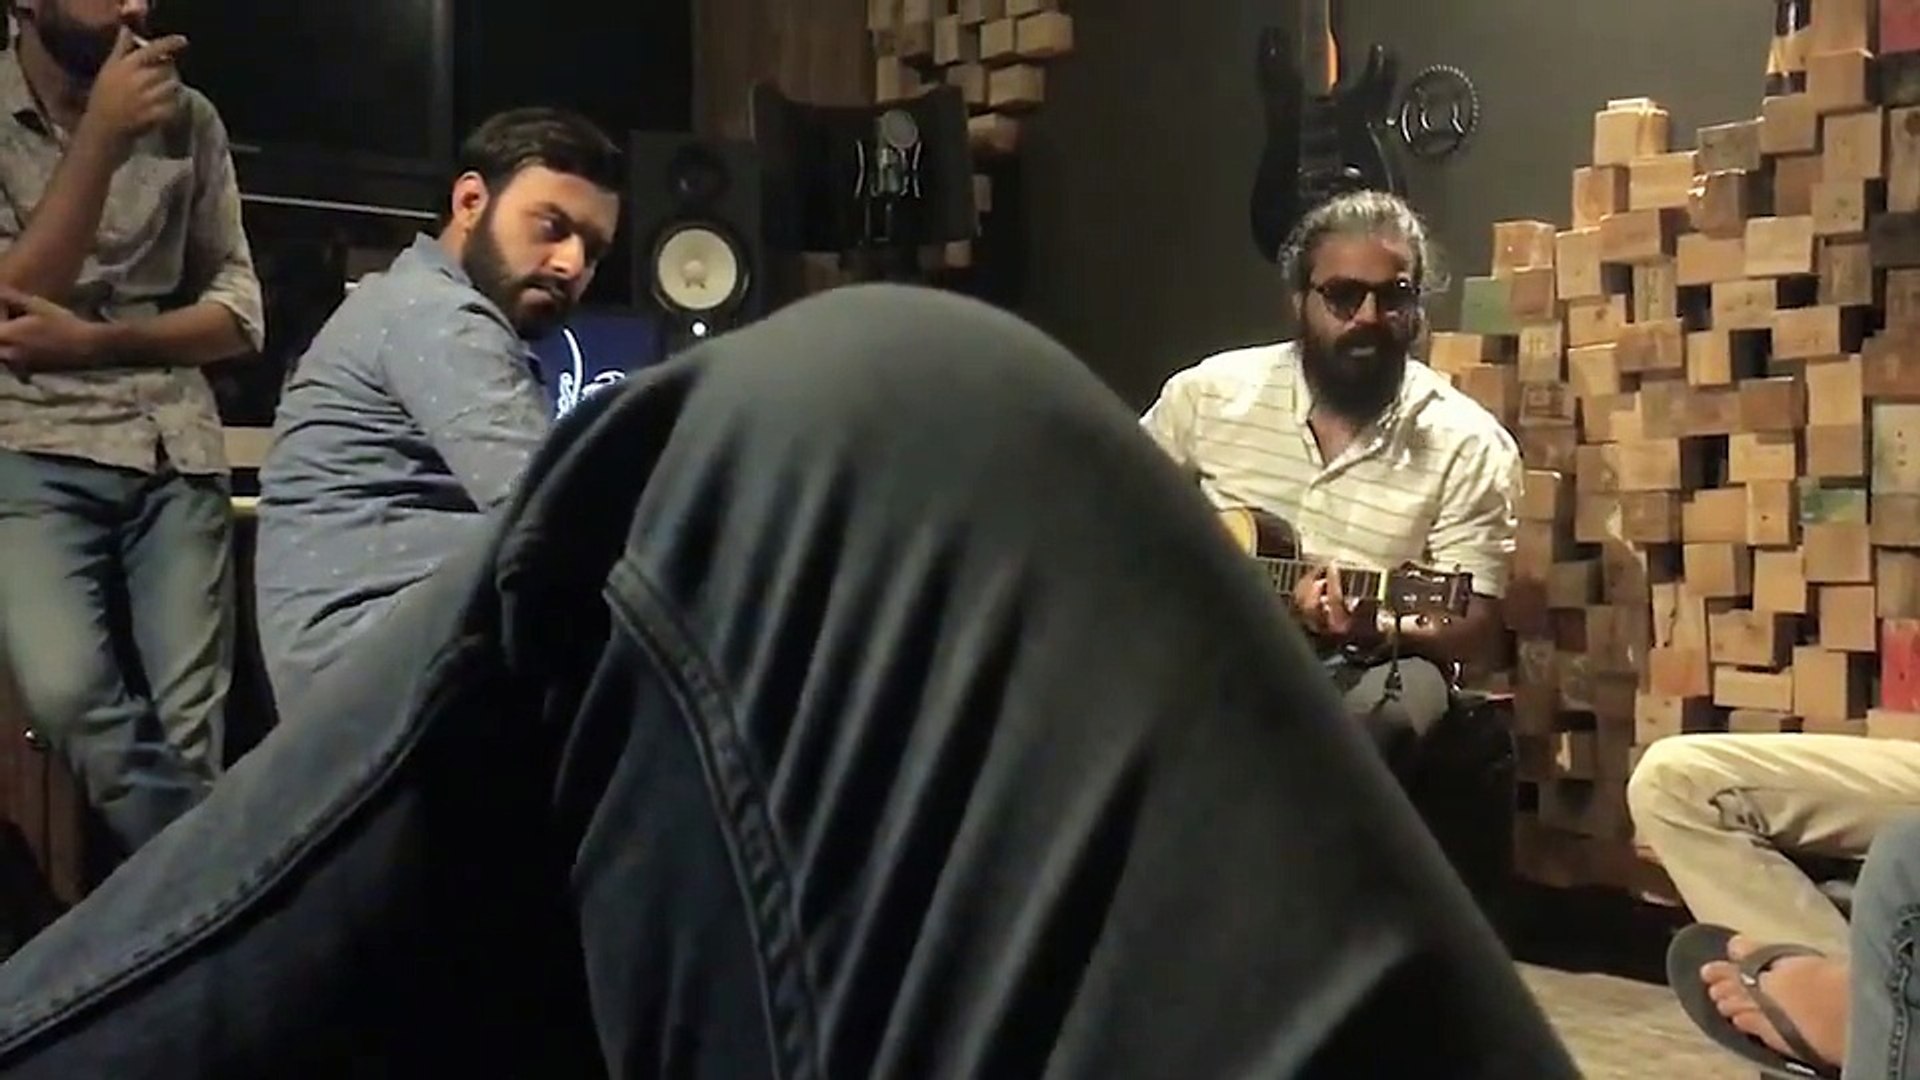 Leak Video Of Singers Asrar Shah